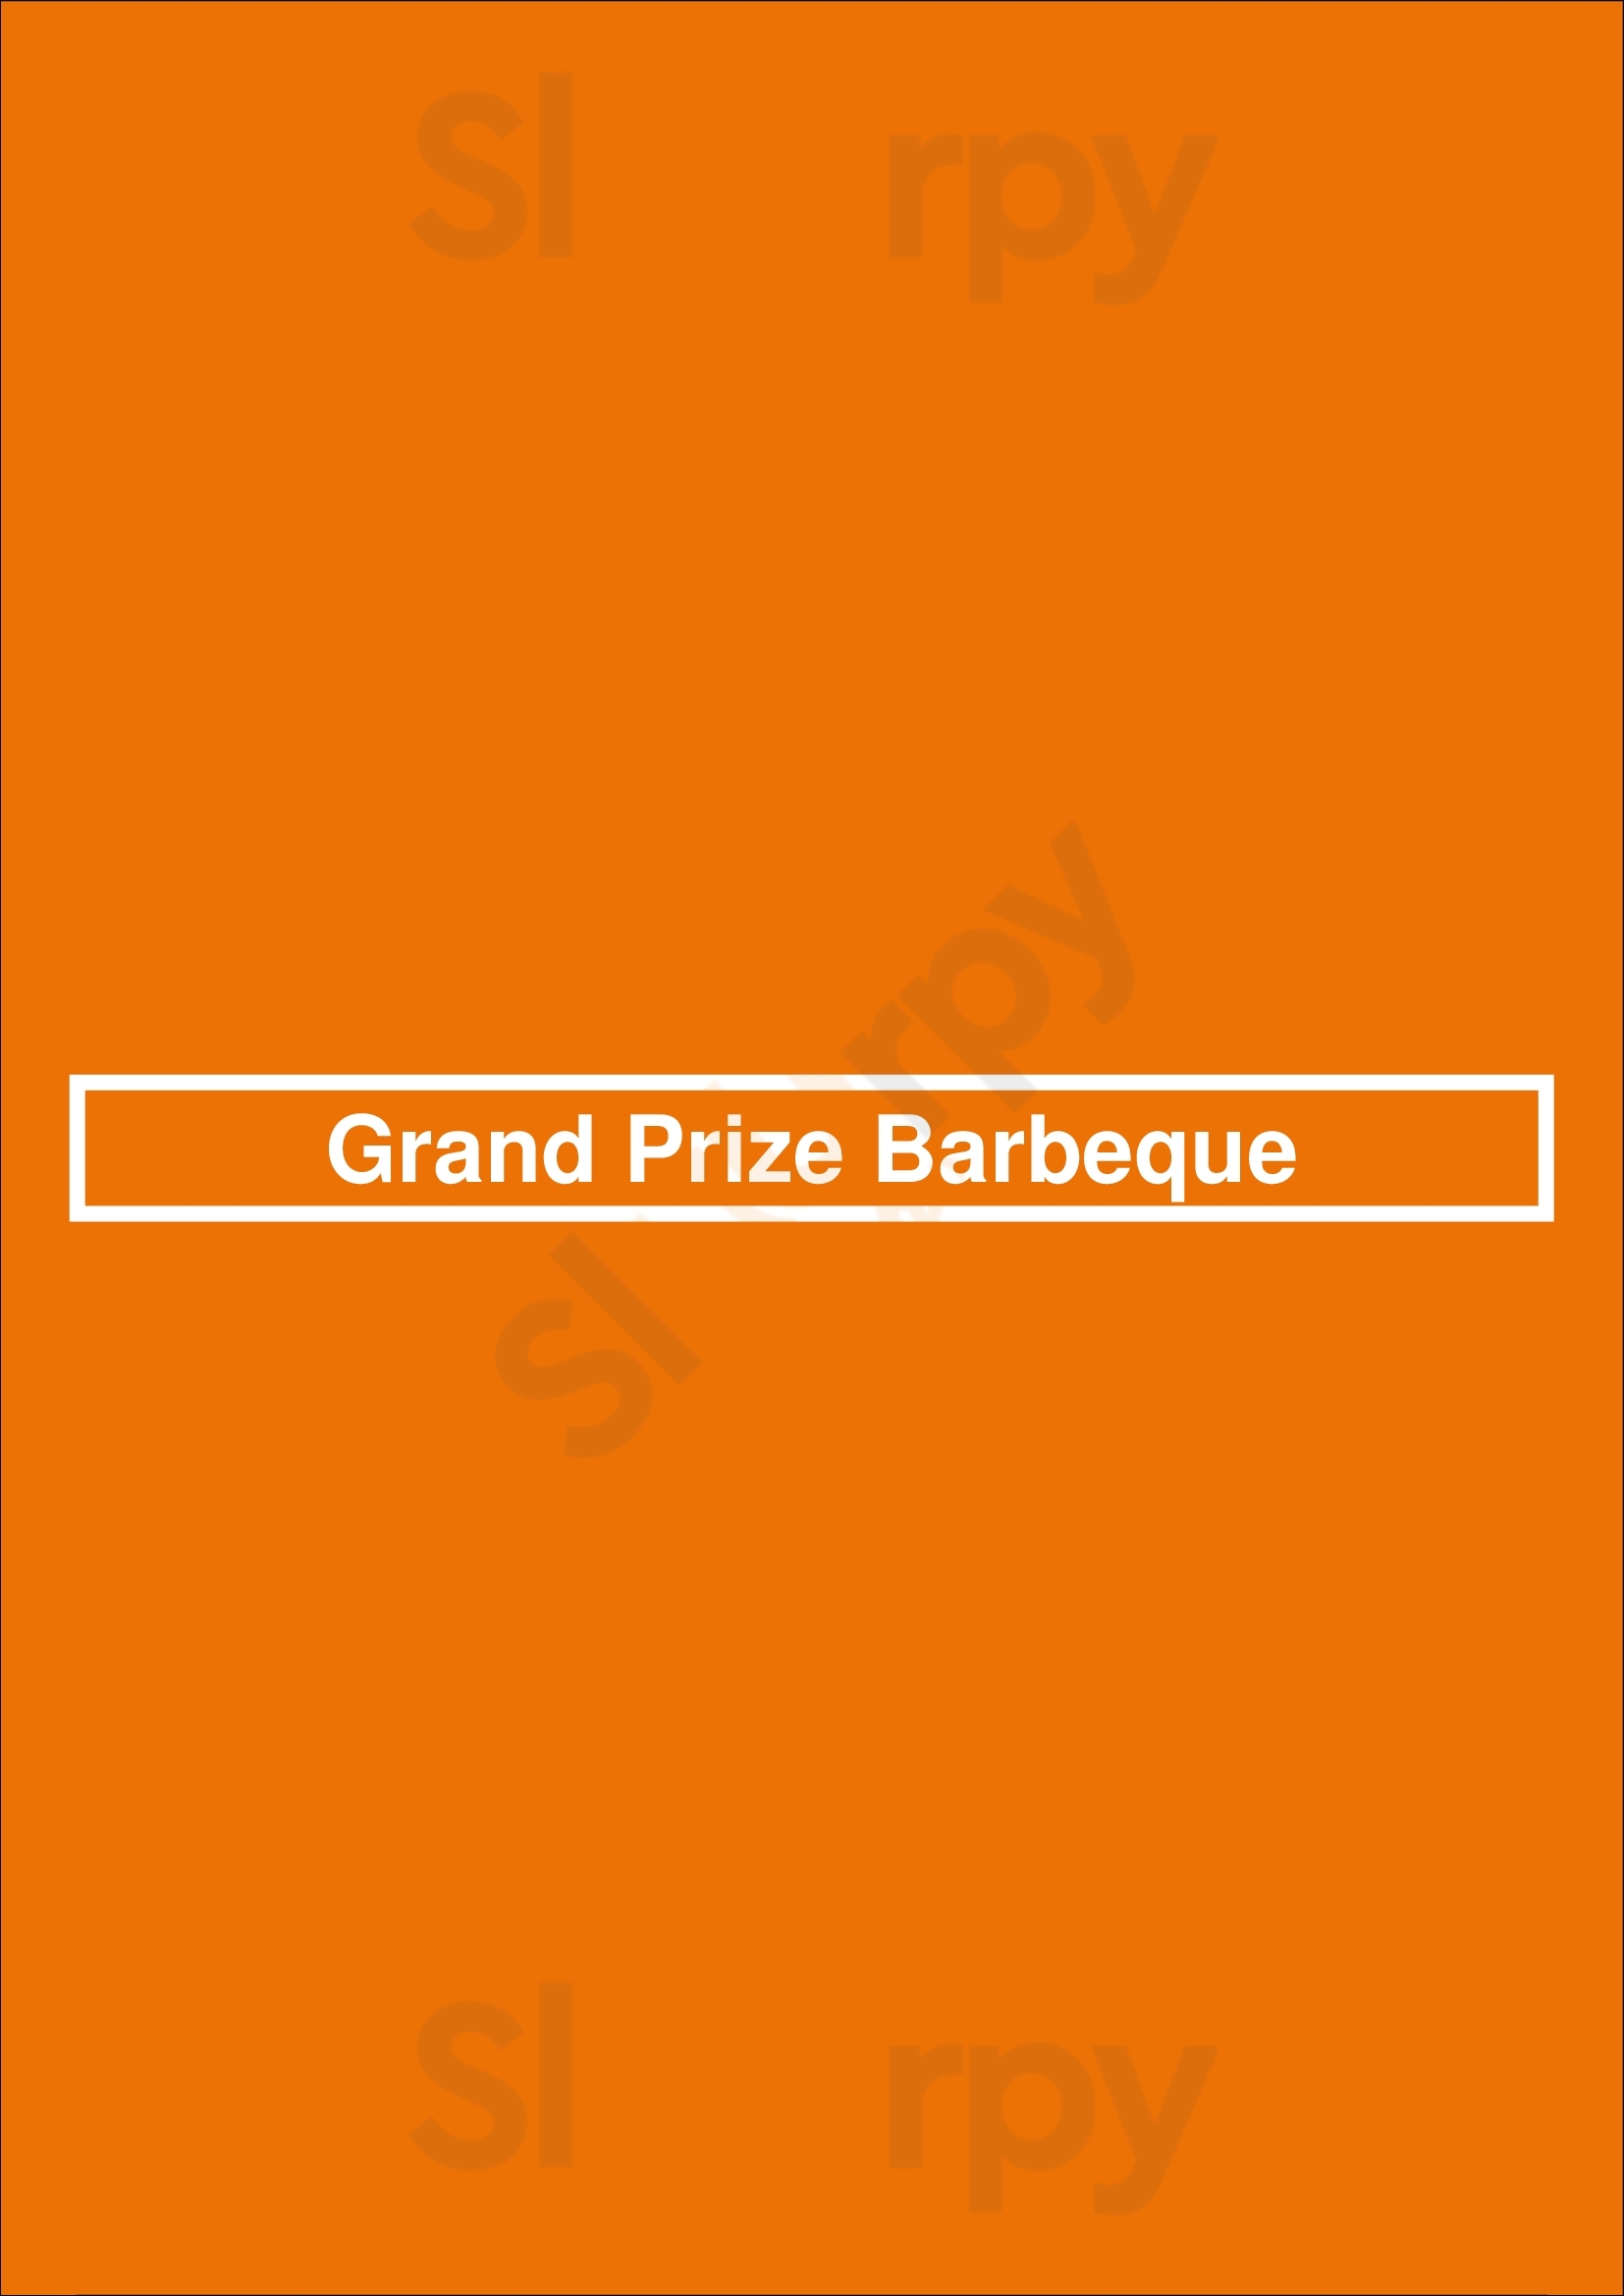 Grand Prize Barbeque Pasadena Menu - 1